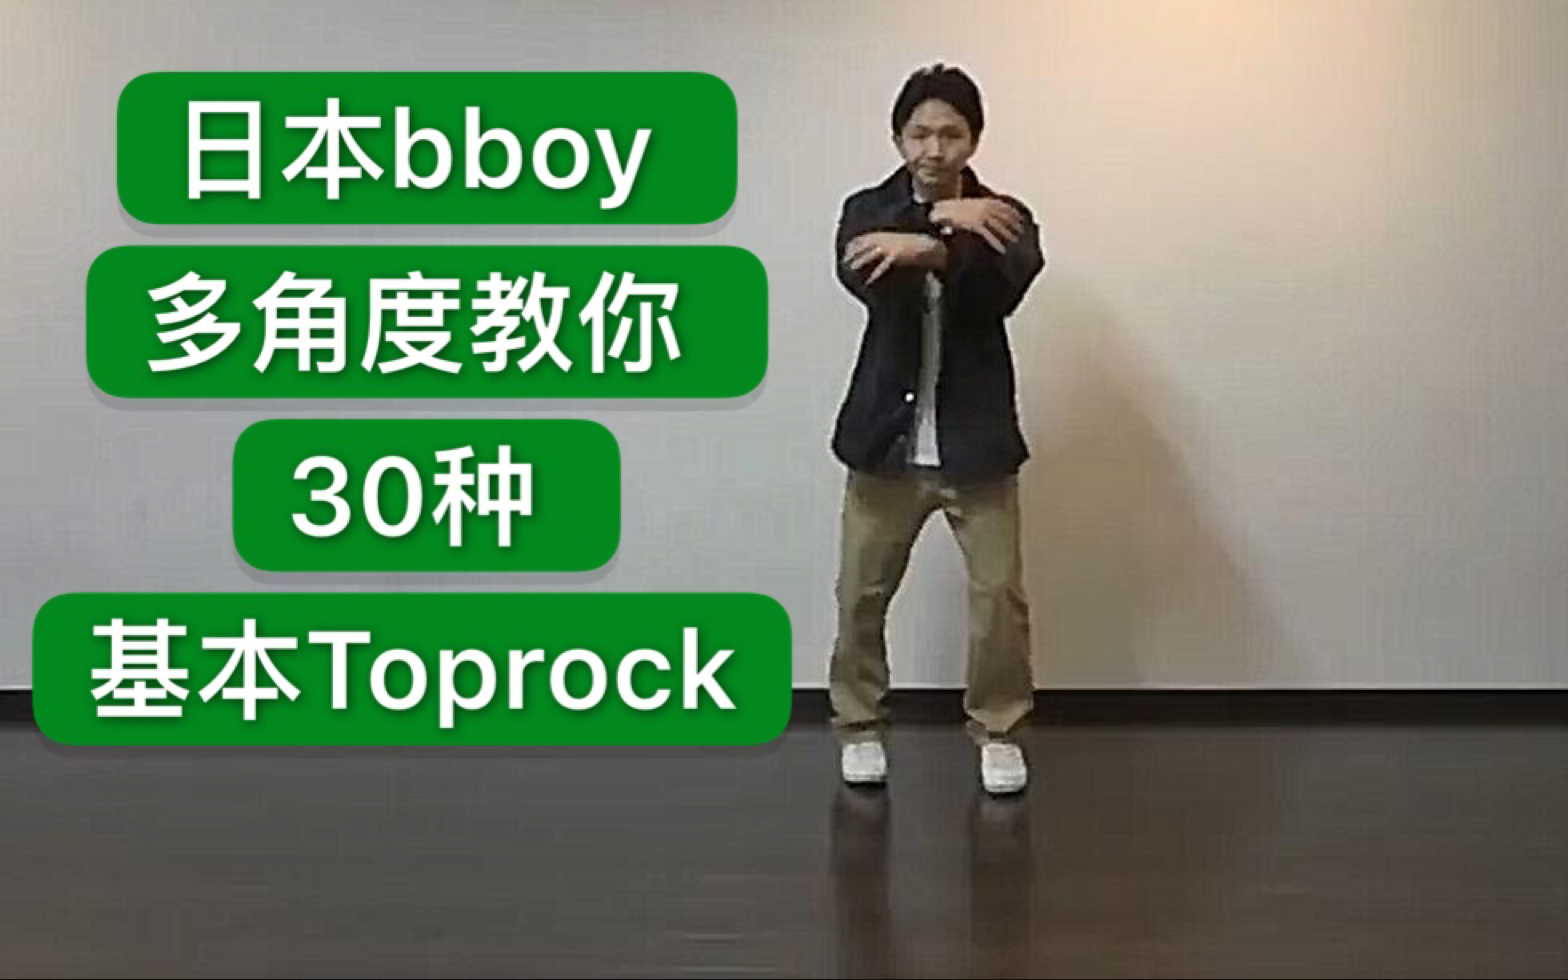 【Toprock干货教学】日本bboy多角度教你30种基本步法  2019breaking街舞红牛bboybgirl基础新手教学house urban编舞